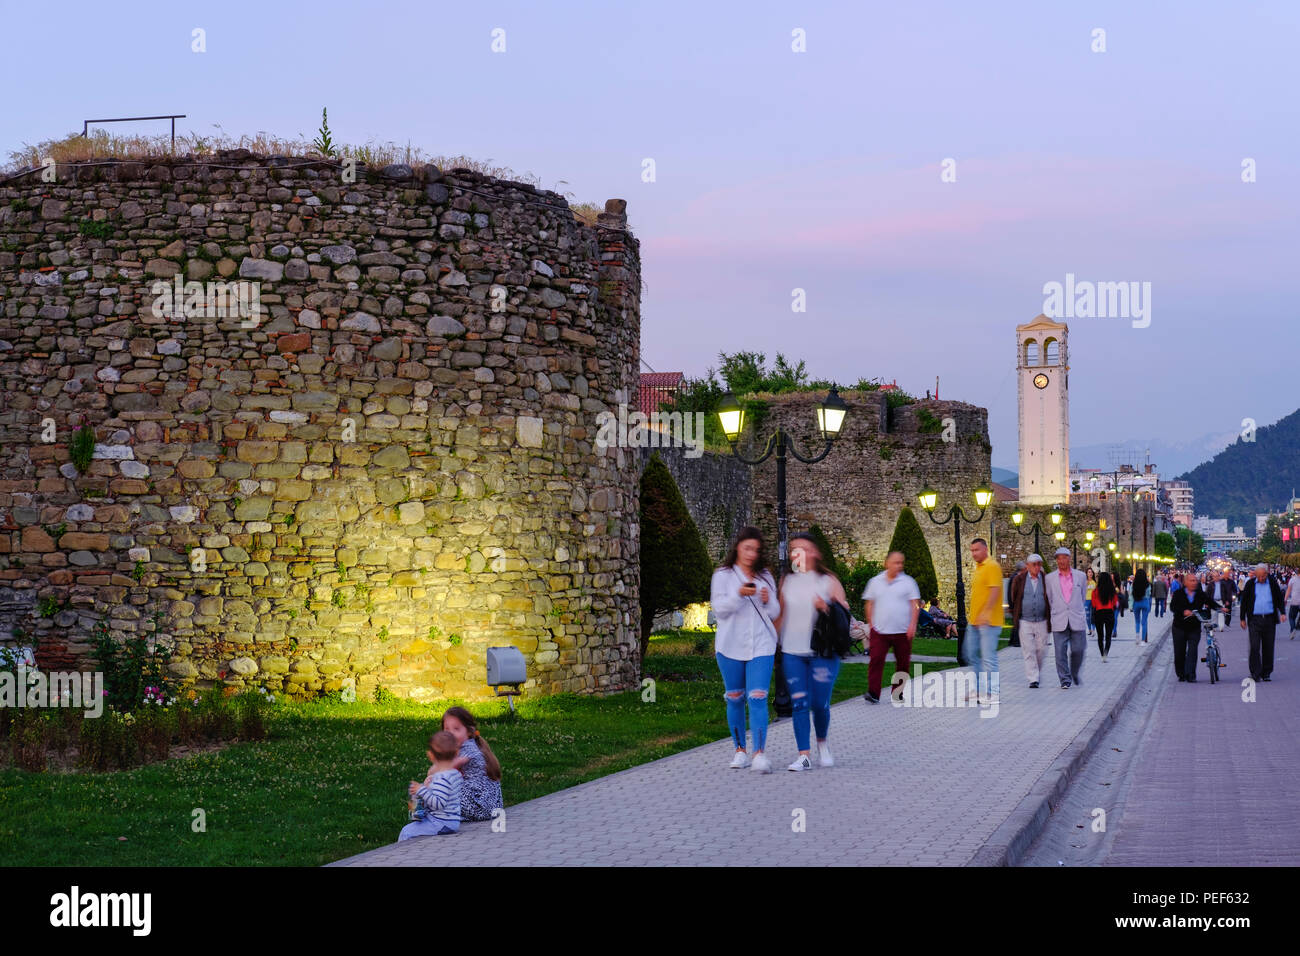 Mur de la forteresse et la tour de l'horloge, crépuscule, Elbasan, Albanie Banque D'Images